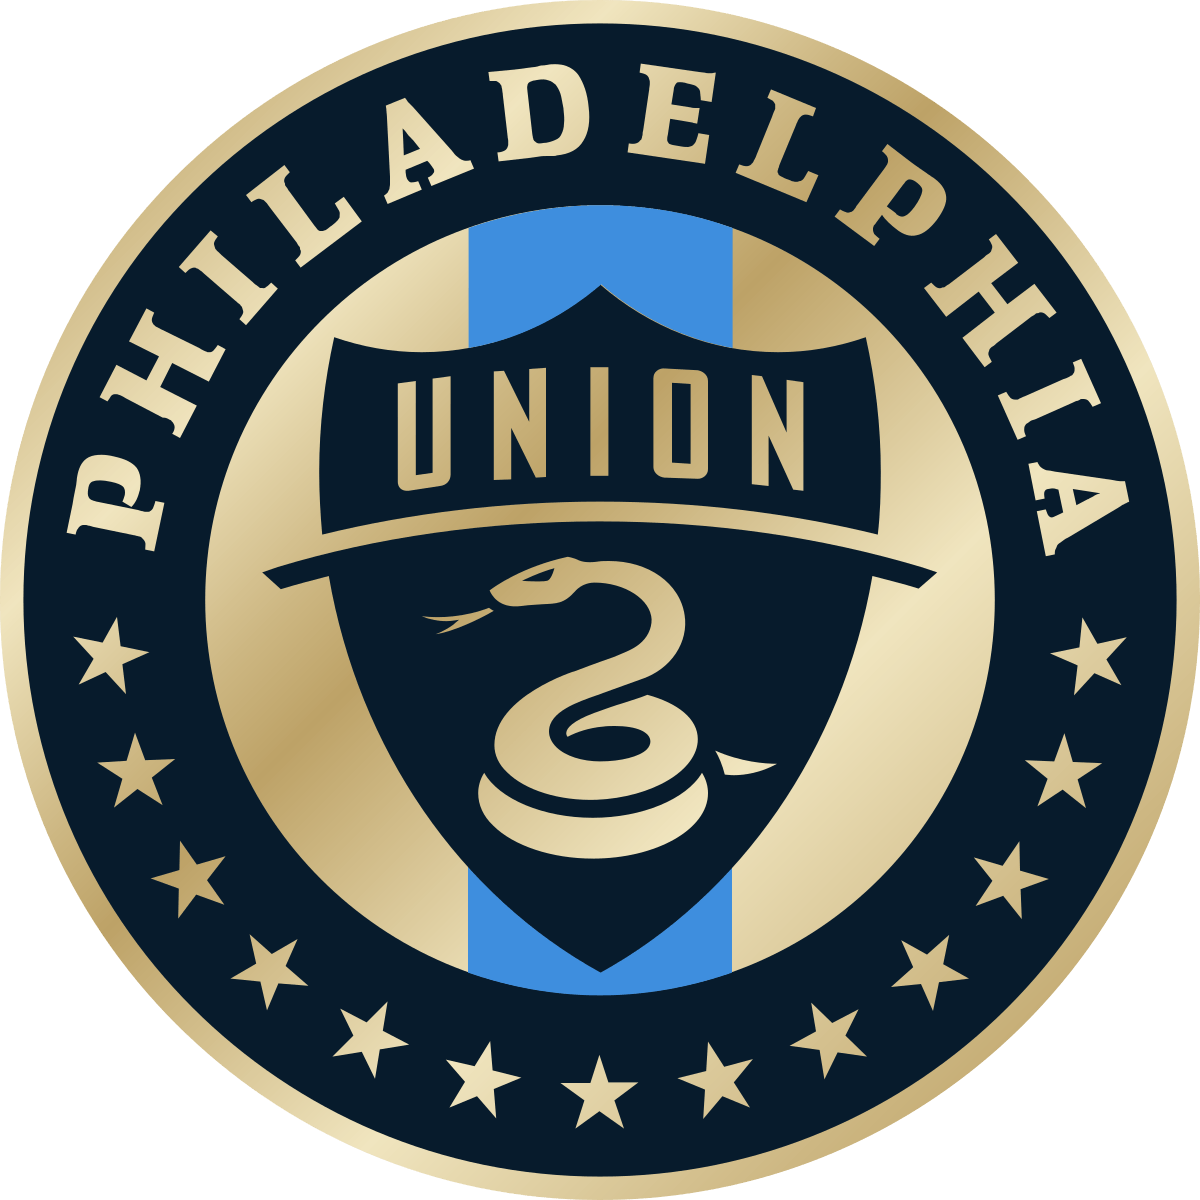 Union Logo - Philadelphia Union